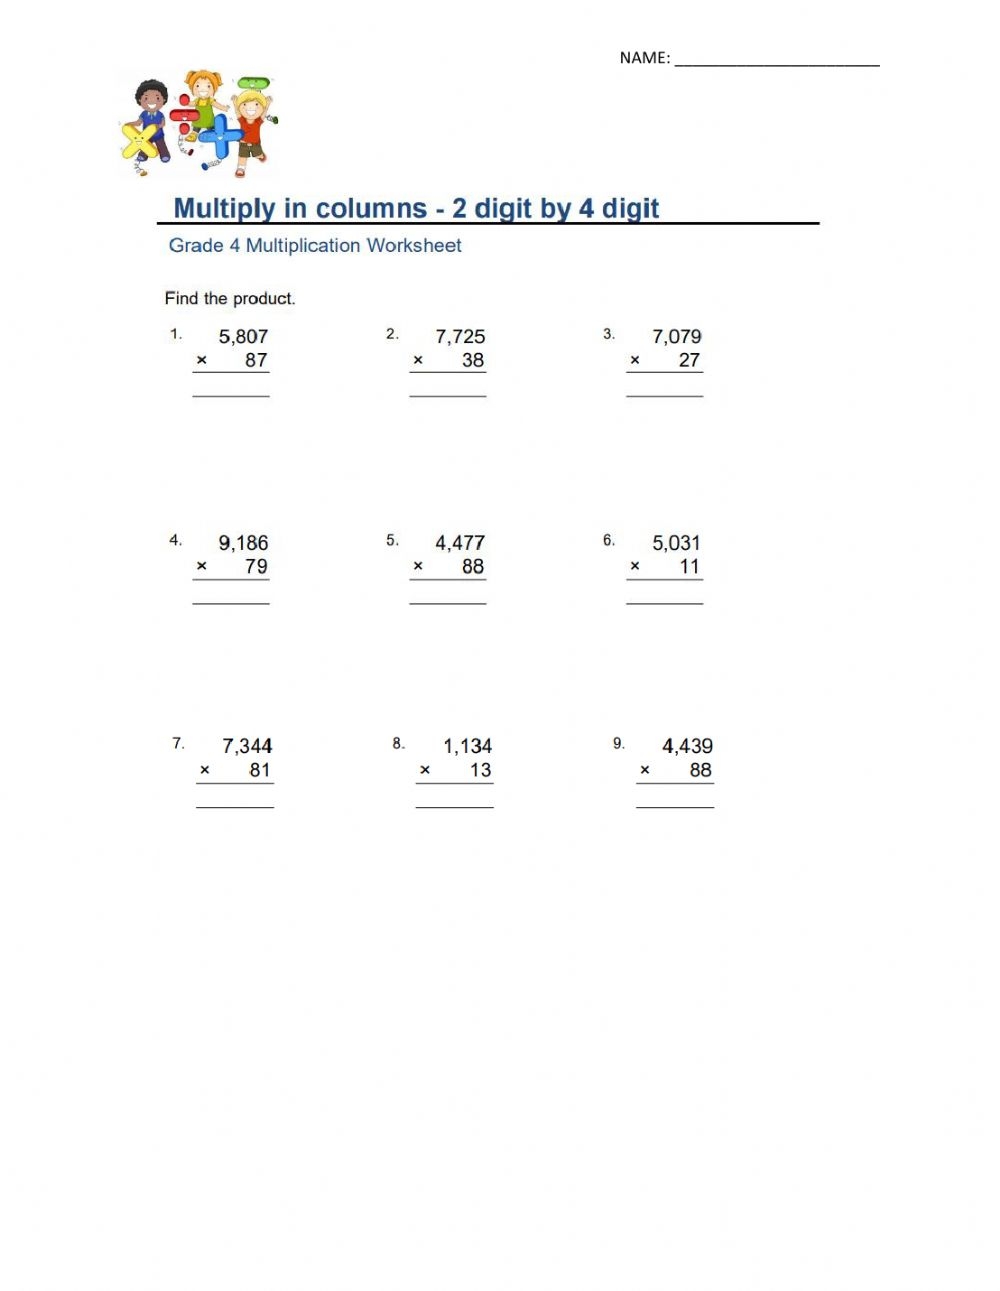 Multiply In Columns 2 digit By 4 digit Worksheet